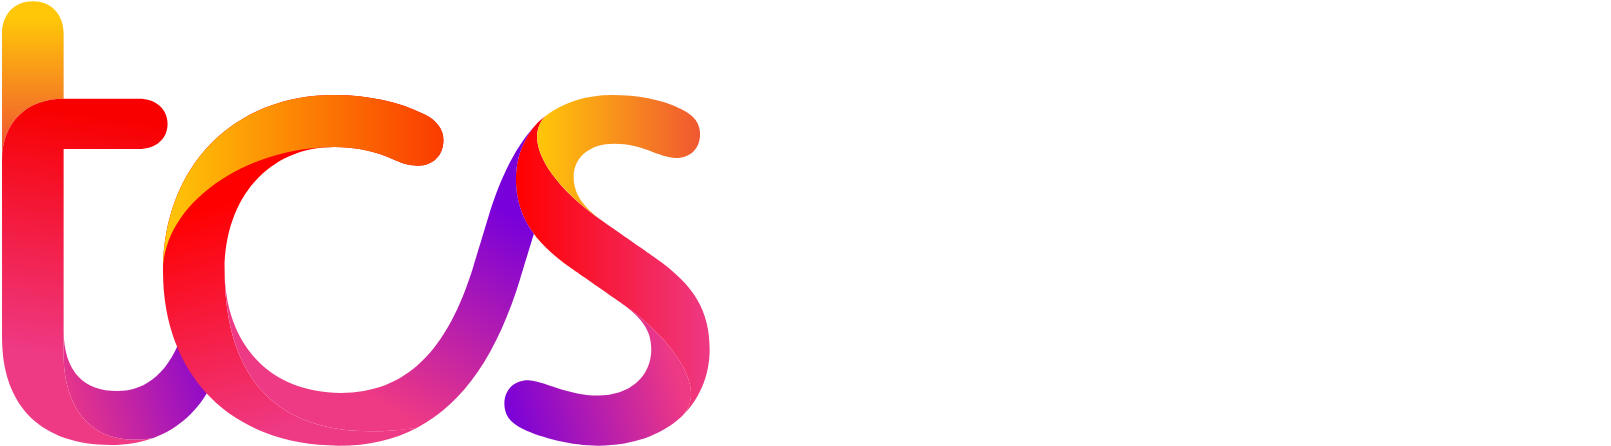 Tata Consultancy Services logo grand pour les fonds sombres (PNG transparent)